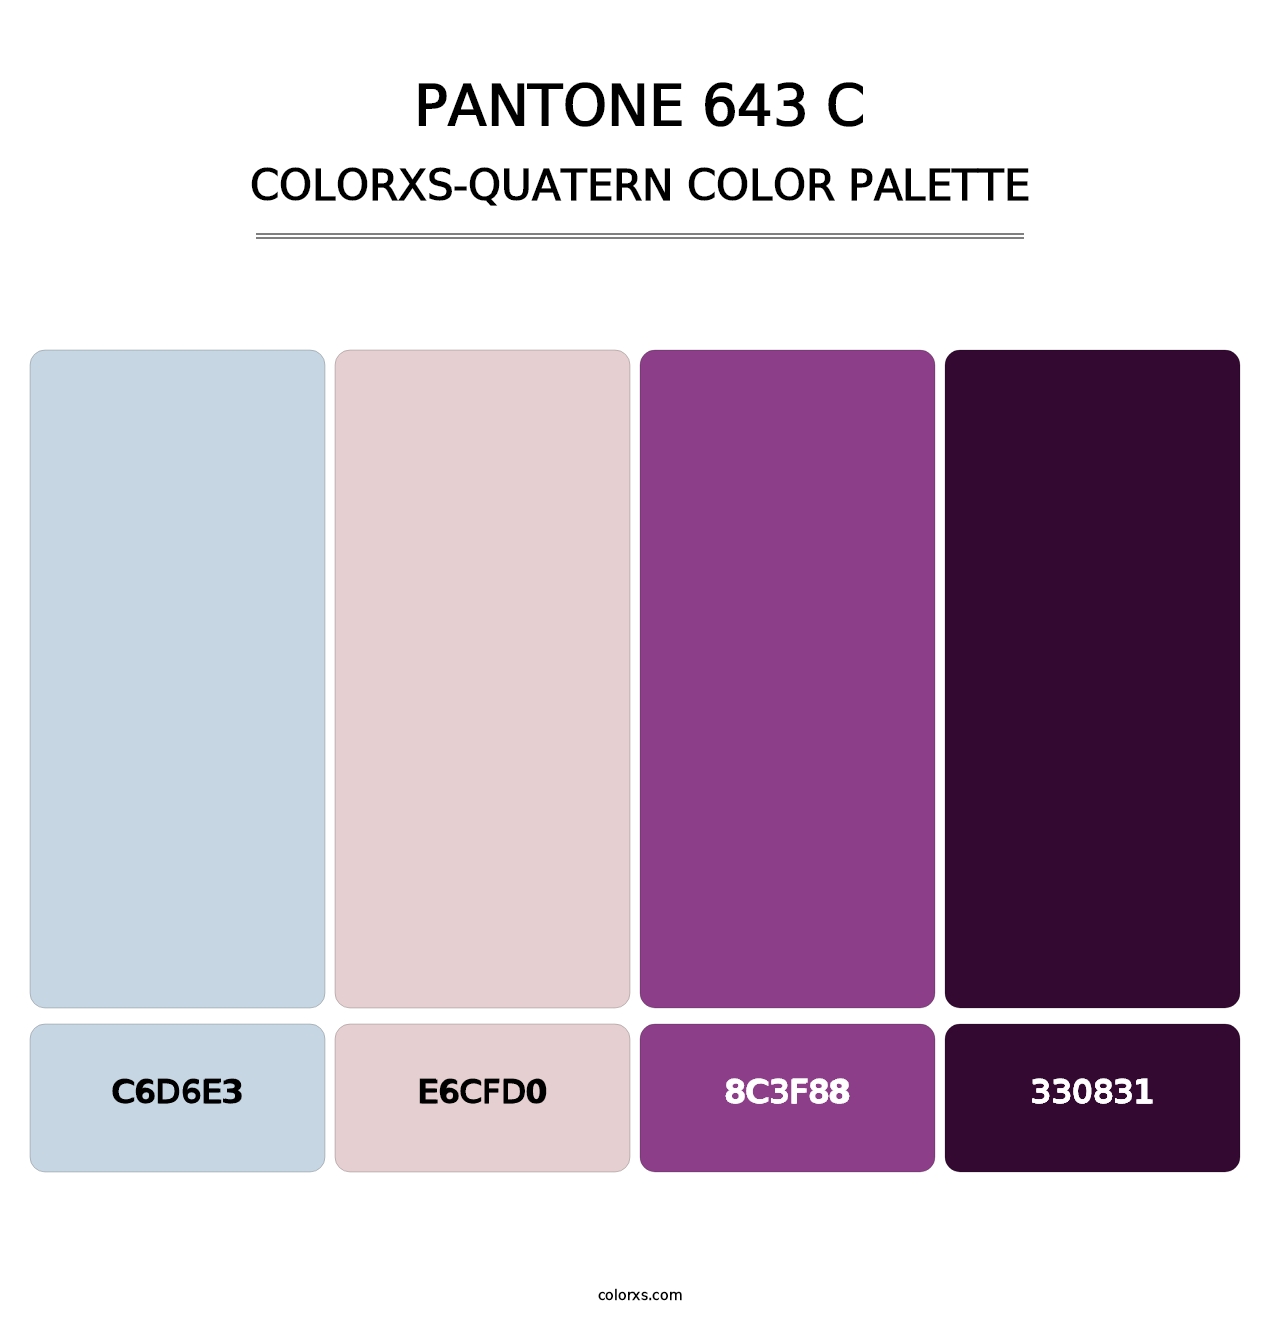 PANTONE 643 C - Colorxs Quatern Palette